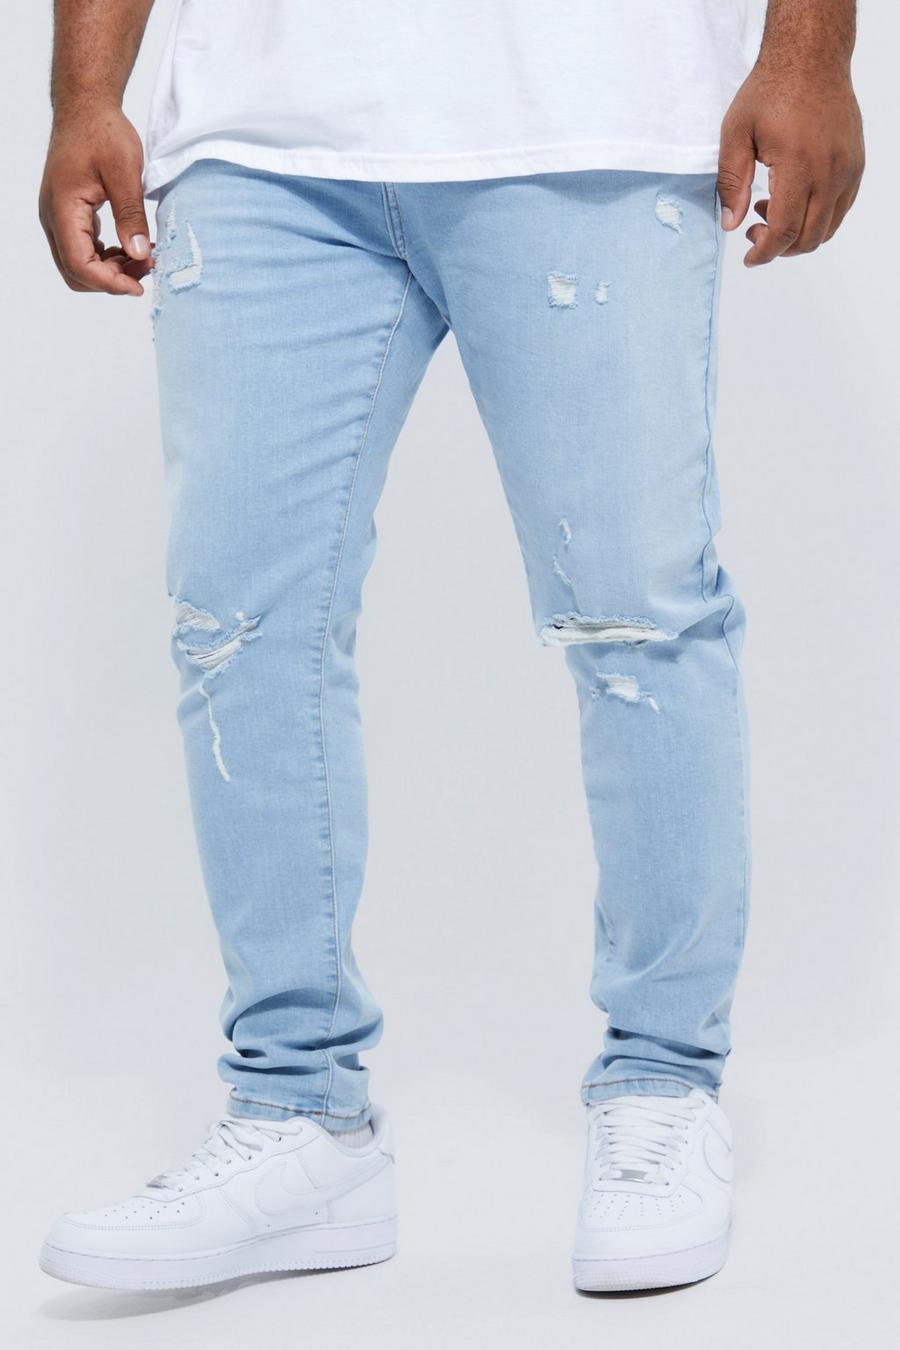 כחול קרח סקיני ג'ינס נמתח עם קרעים בברך, מידות גדולות